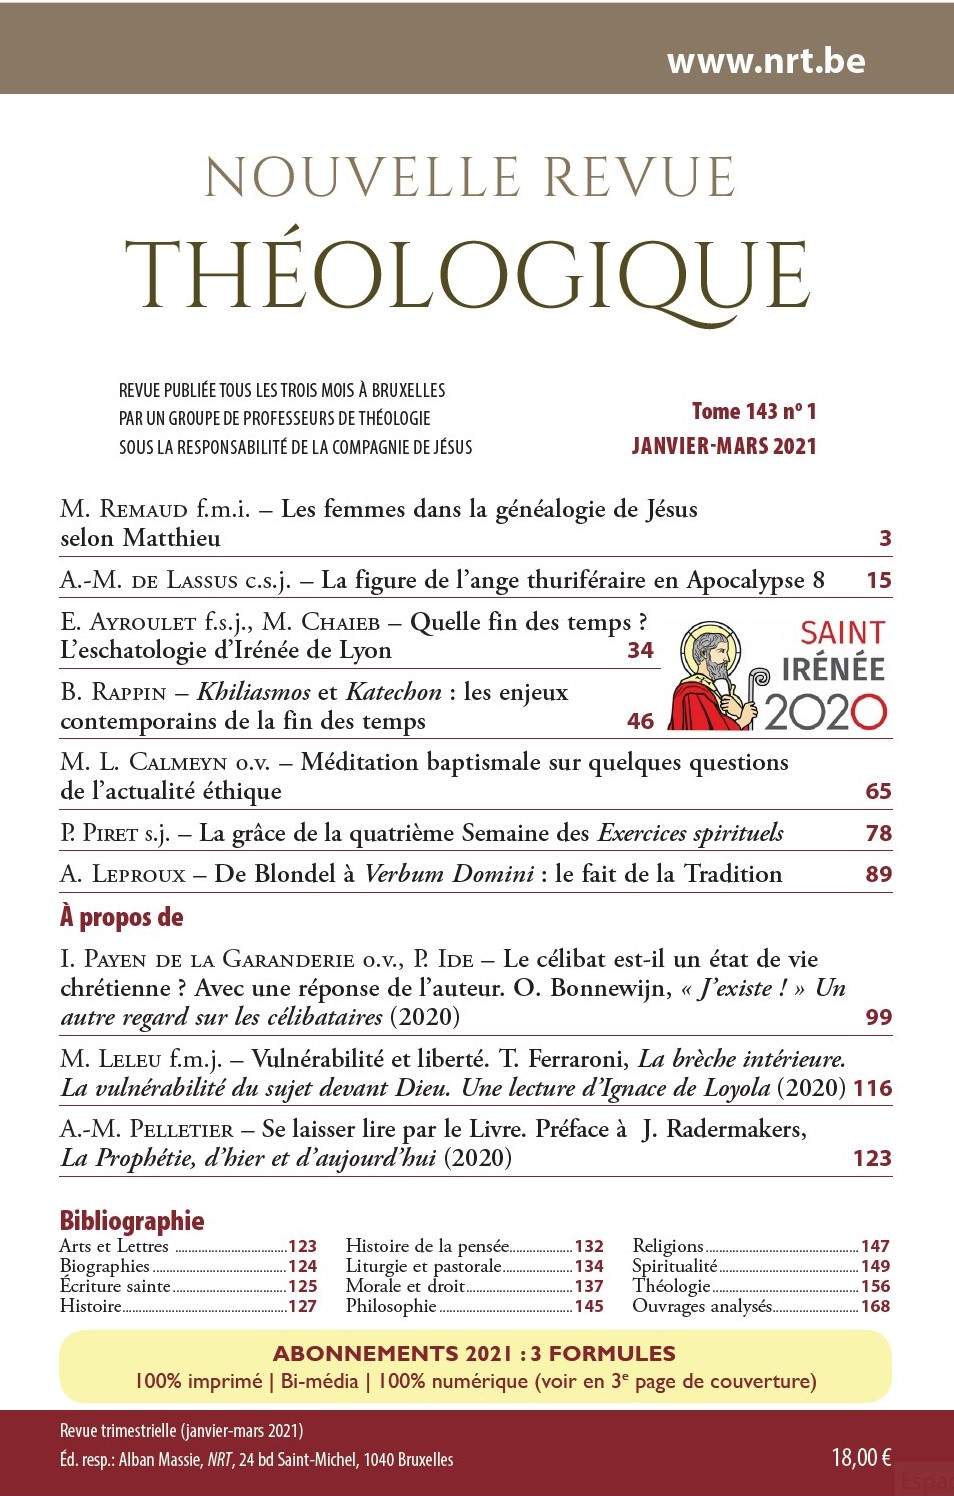 Image infolettre - Nouvelle Revue Théologique - nrt.be